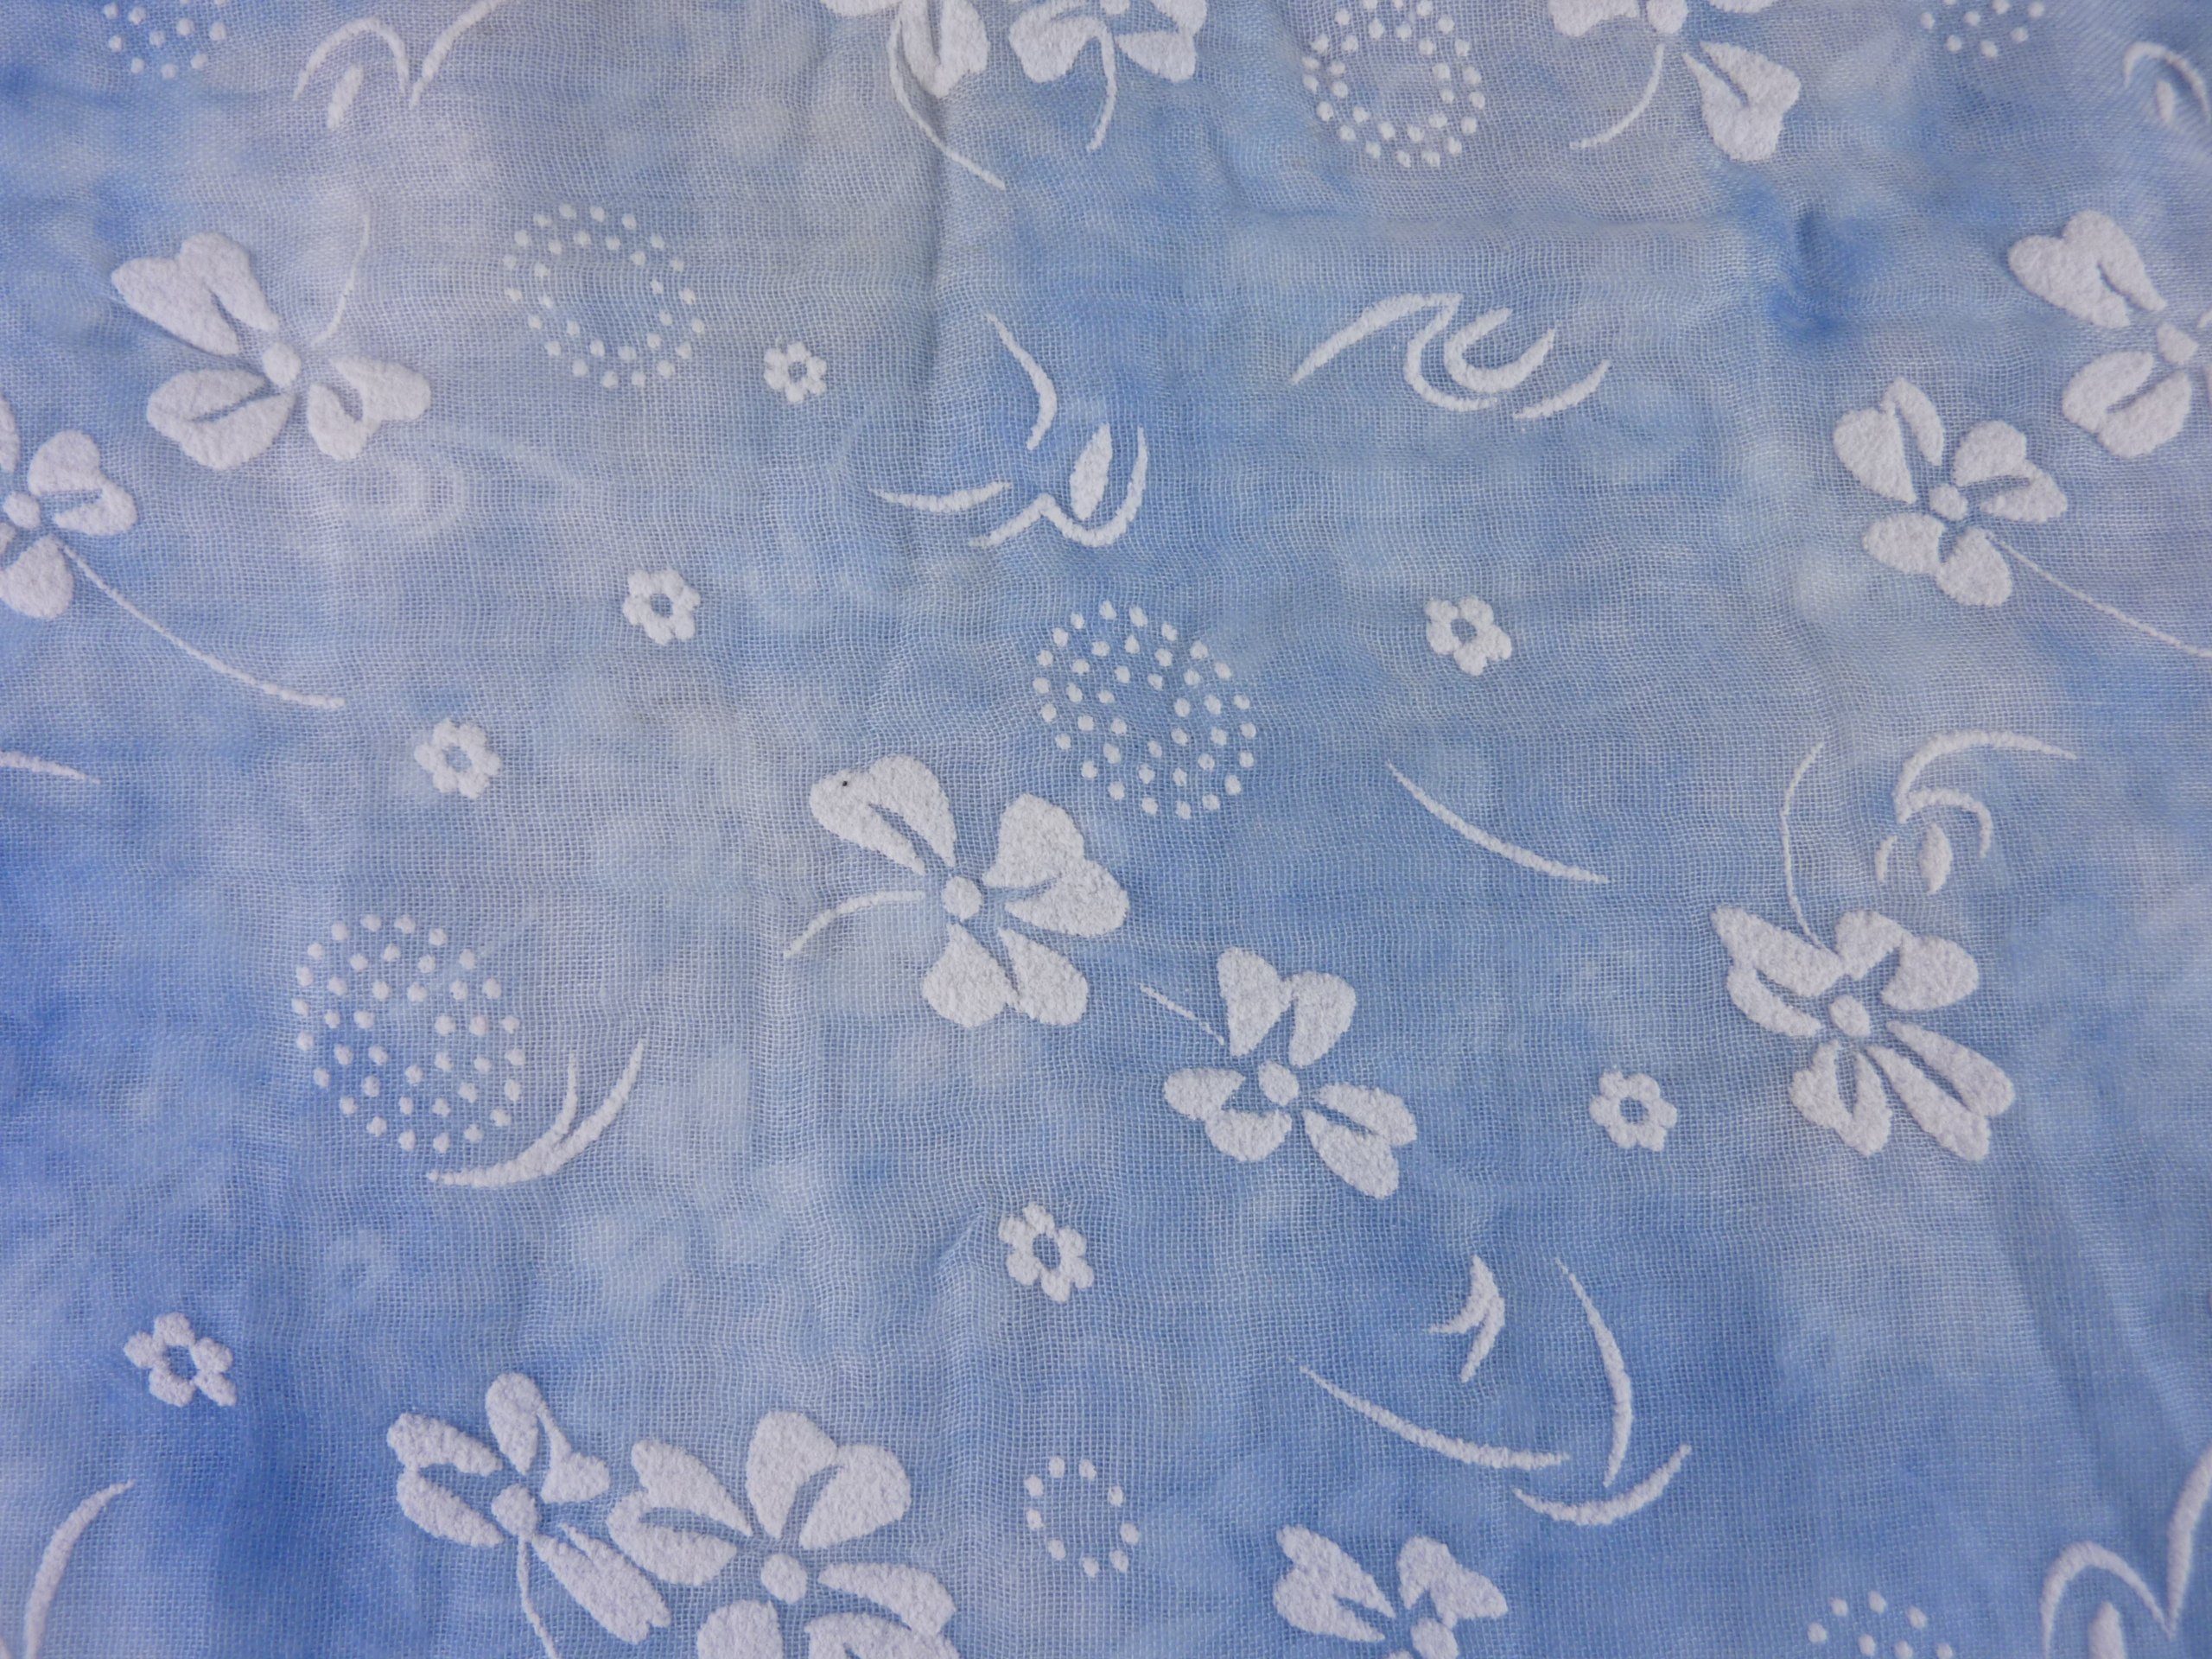 Taschen4life Loop leichter babyblau Schal Damen Blumen Farben, 0112, Loop Schlauchschal Muster, pastell